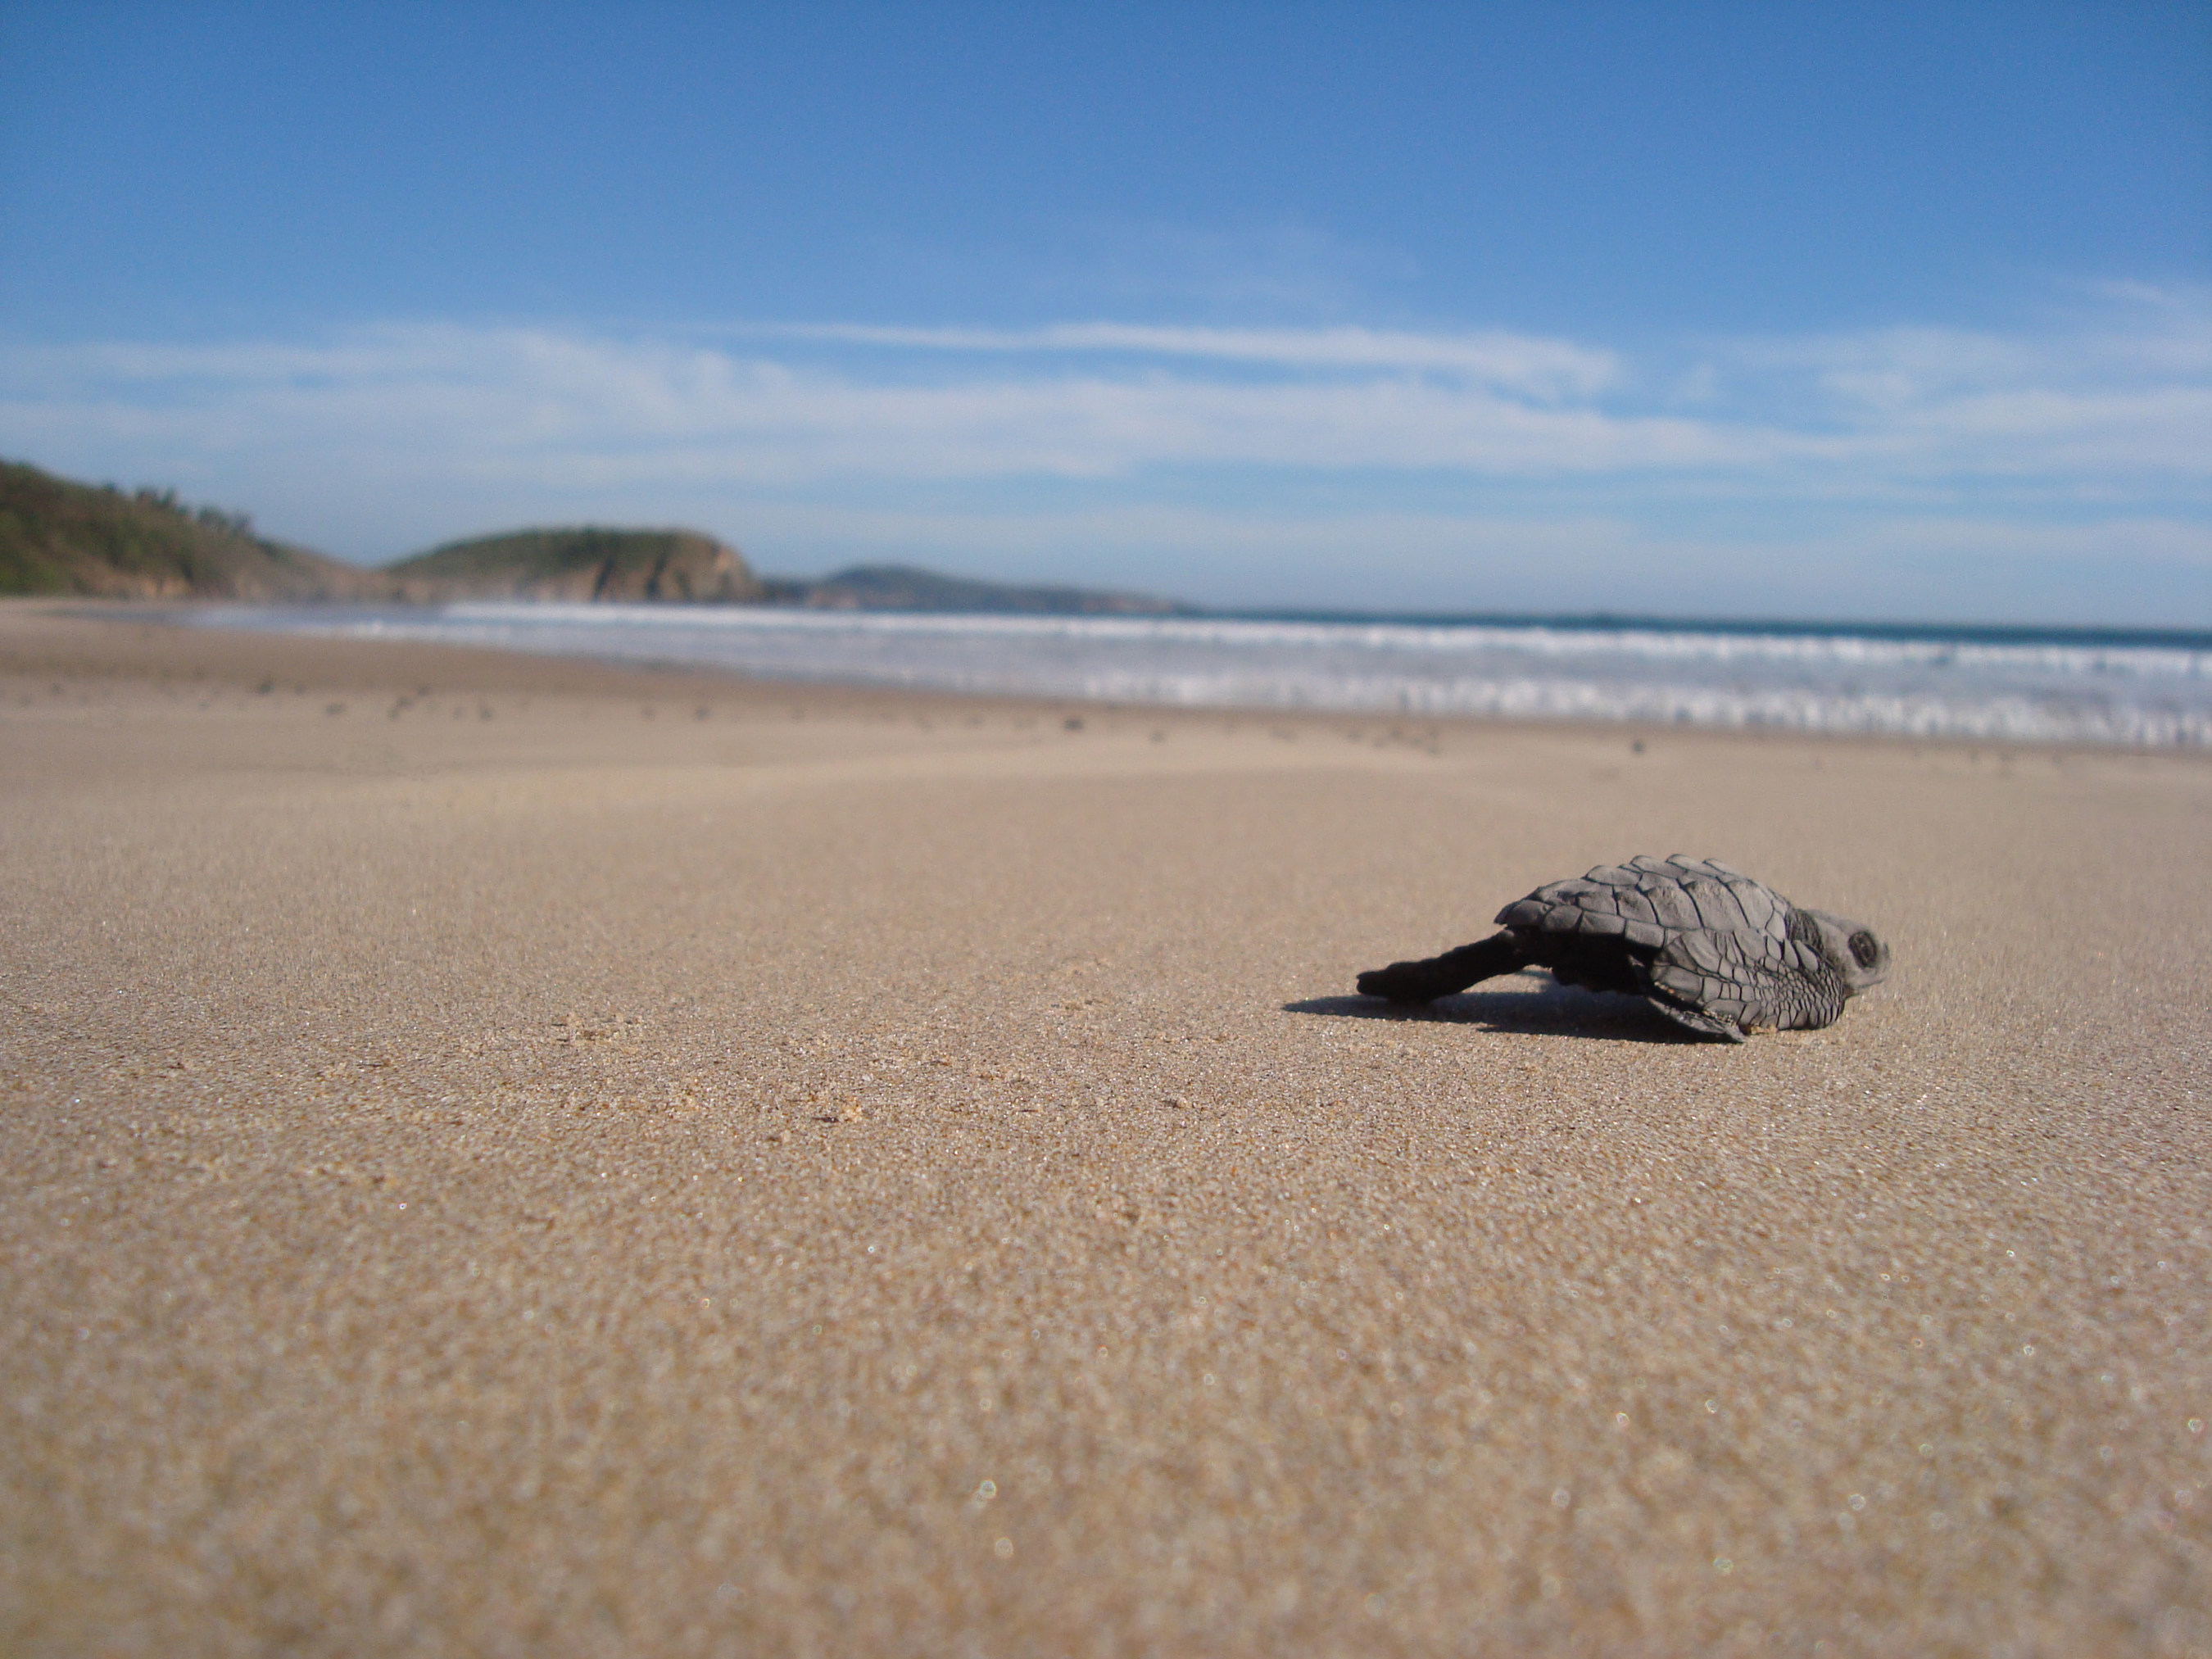 Guests release baby sea turtles into the ocean at Las Alamandas Resort.